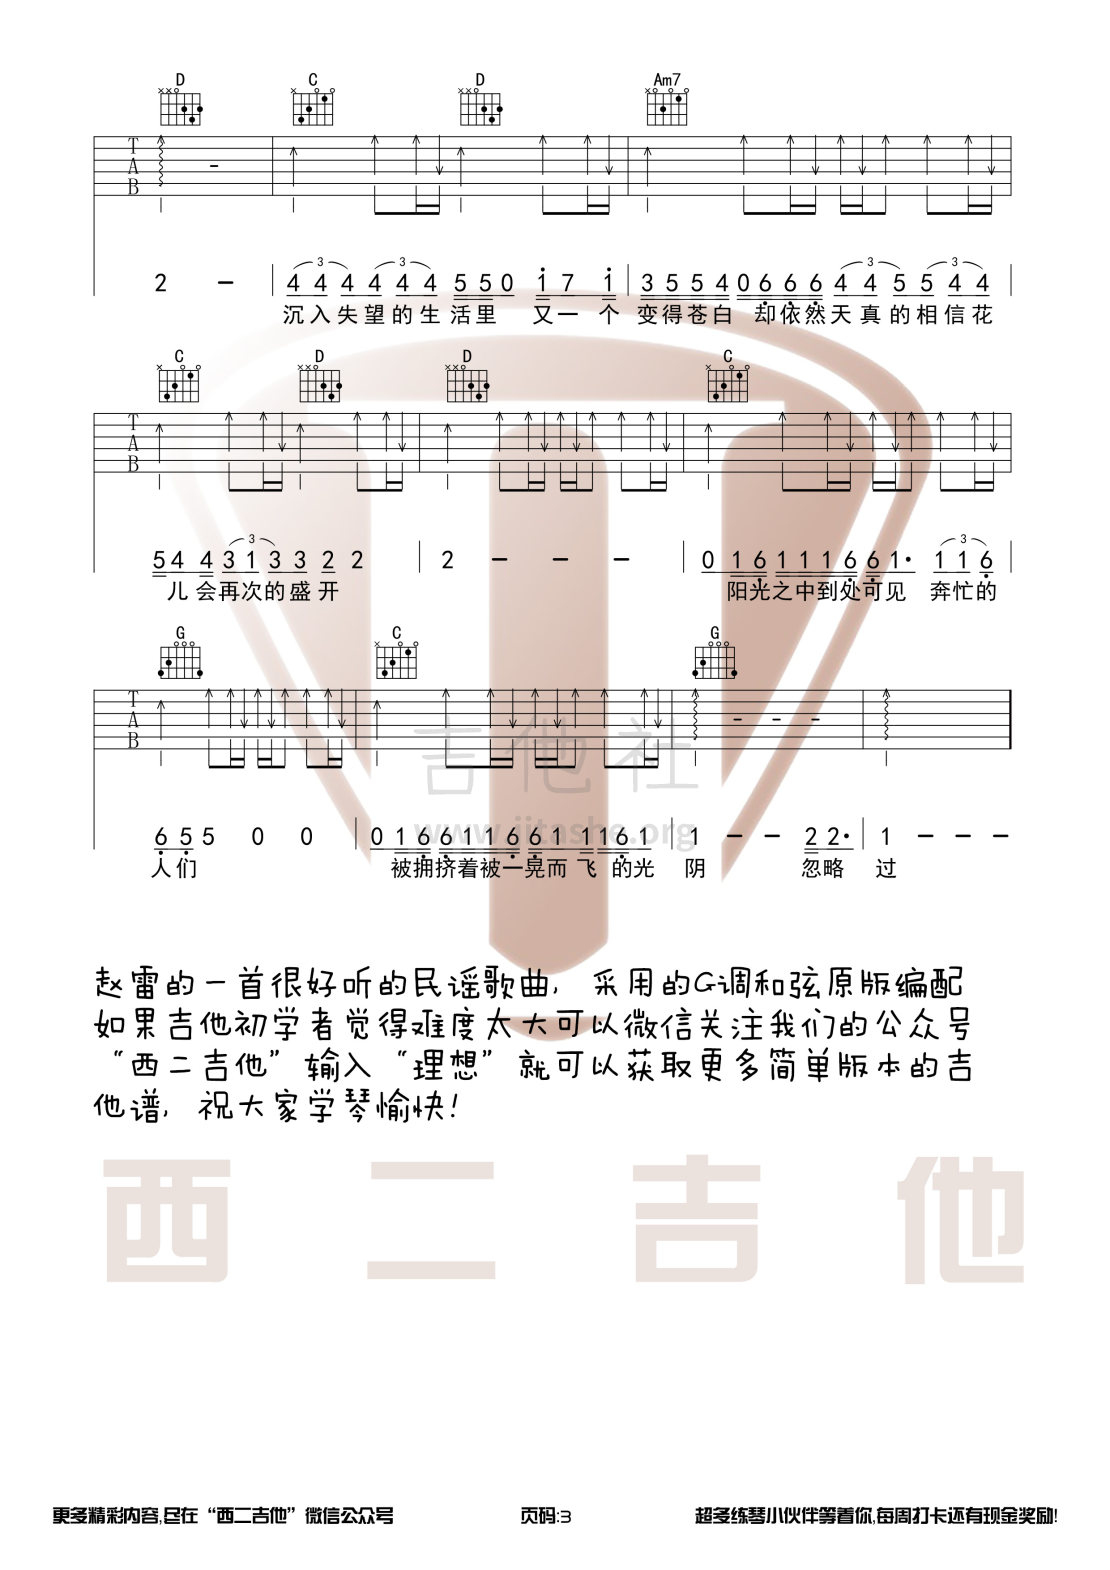 理想(西二吉他)吉他谱(图片谱,西二吉他,民谣,弹唱)_赵雷(雷子)_理想3.jpg